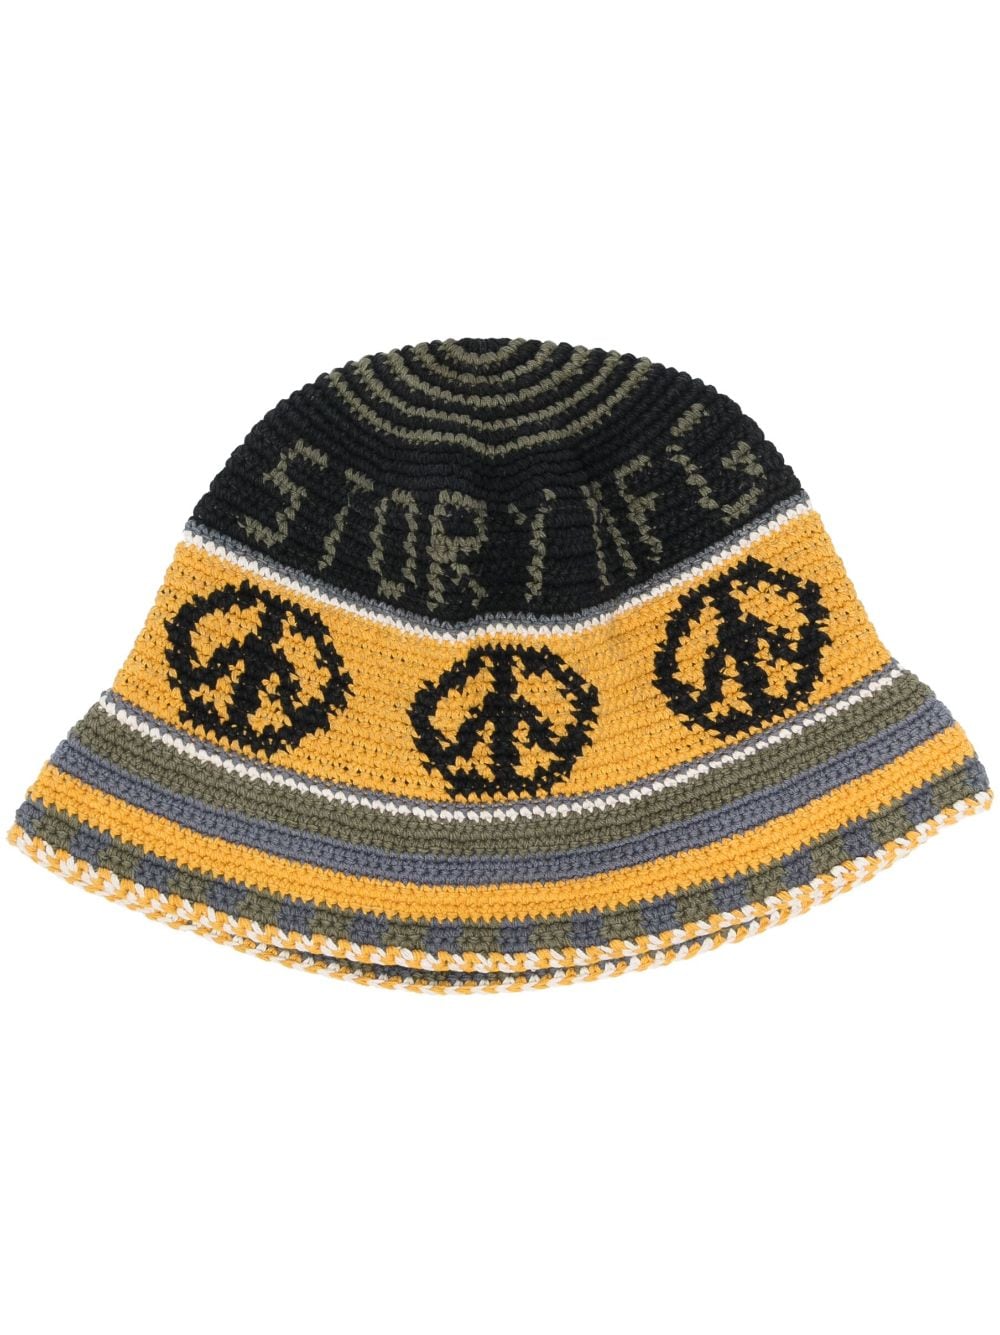 STORY mfg. logo-detail Crochet Bucket Hat - Farfetch